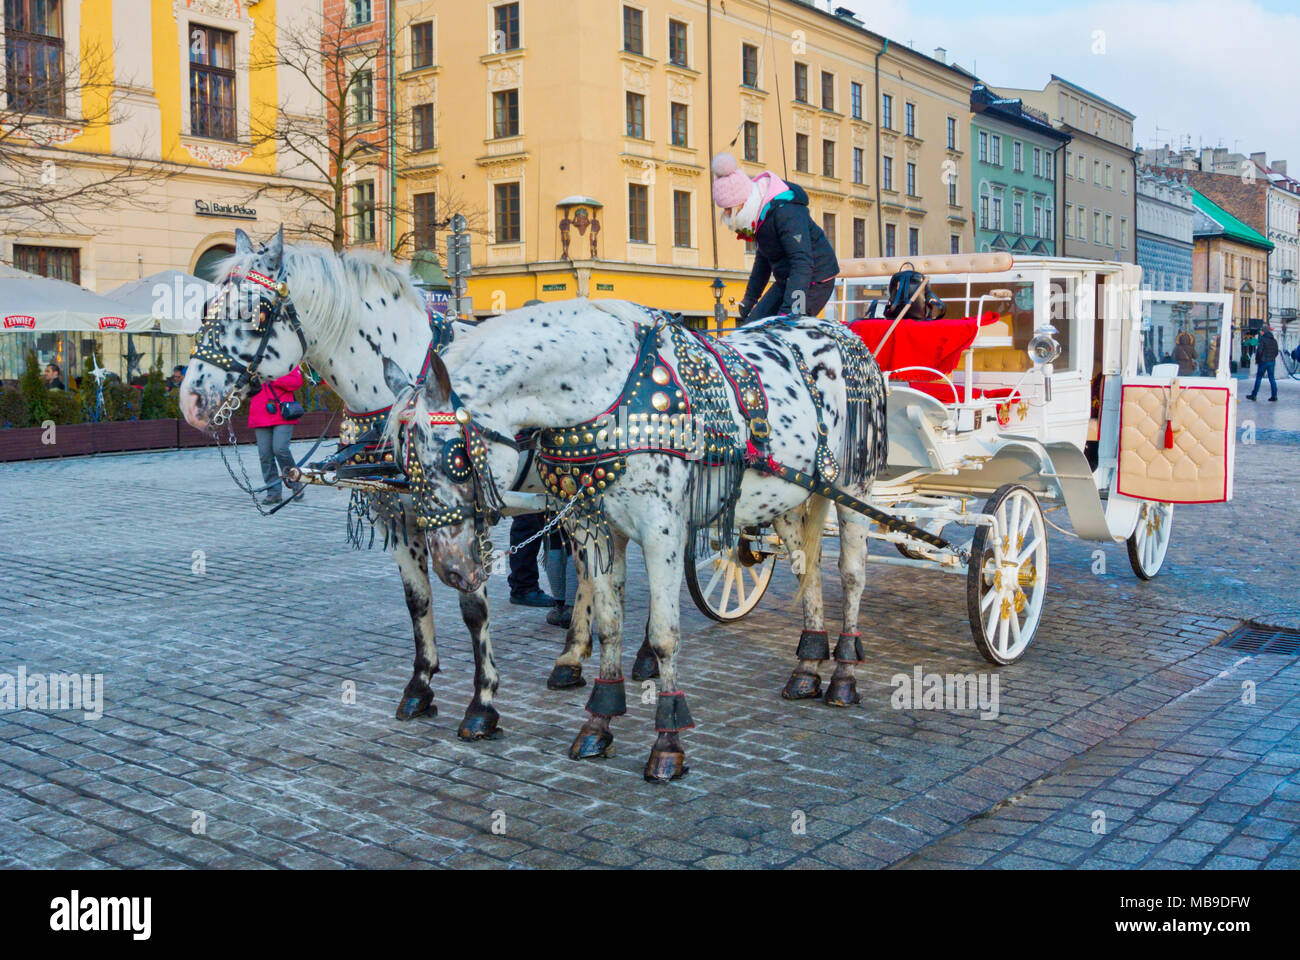 Horse drawn carriage, Rynek Glowny, old town square, Krakow, Malopolska, Poland Stock Photo